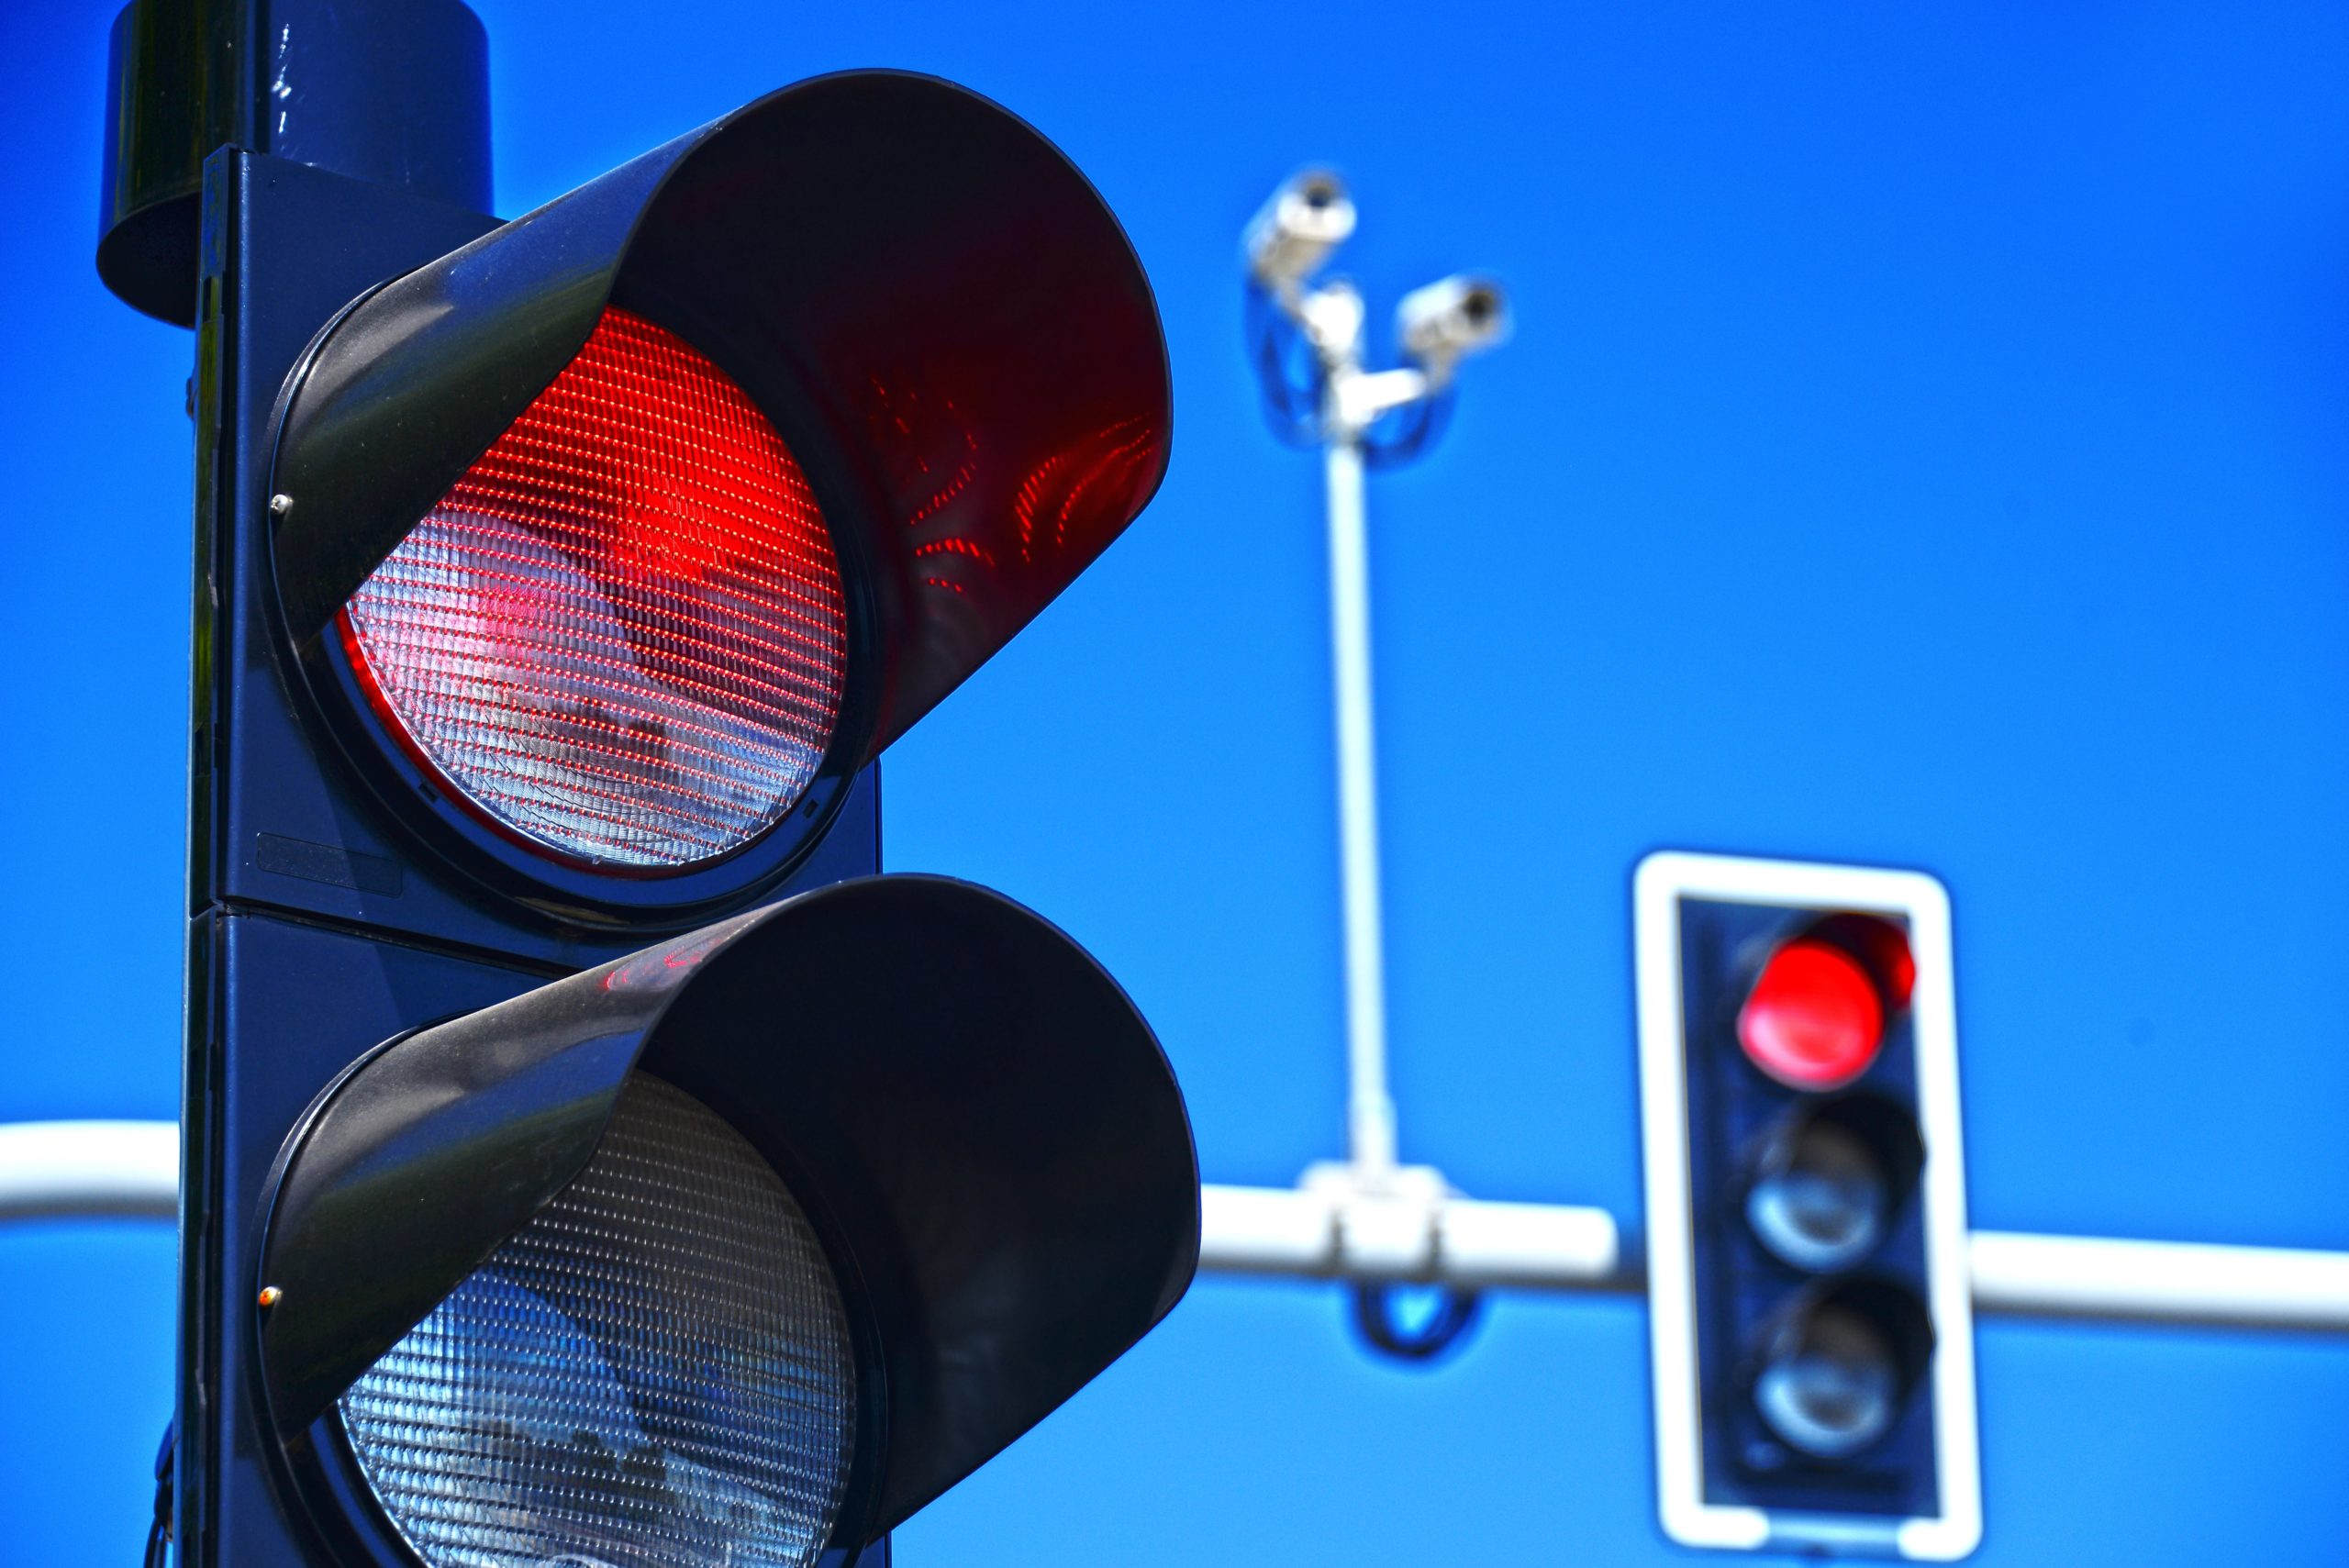 توضيح هام من المرور بشأن عقوبة مخالفة قطع الإشارة الحمراء